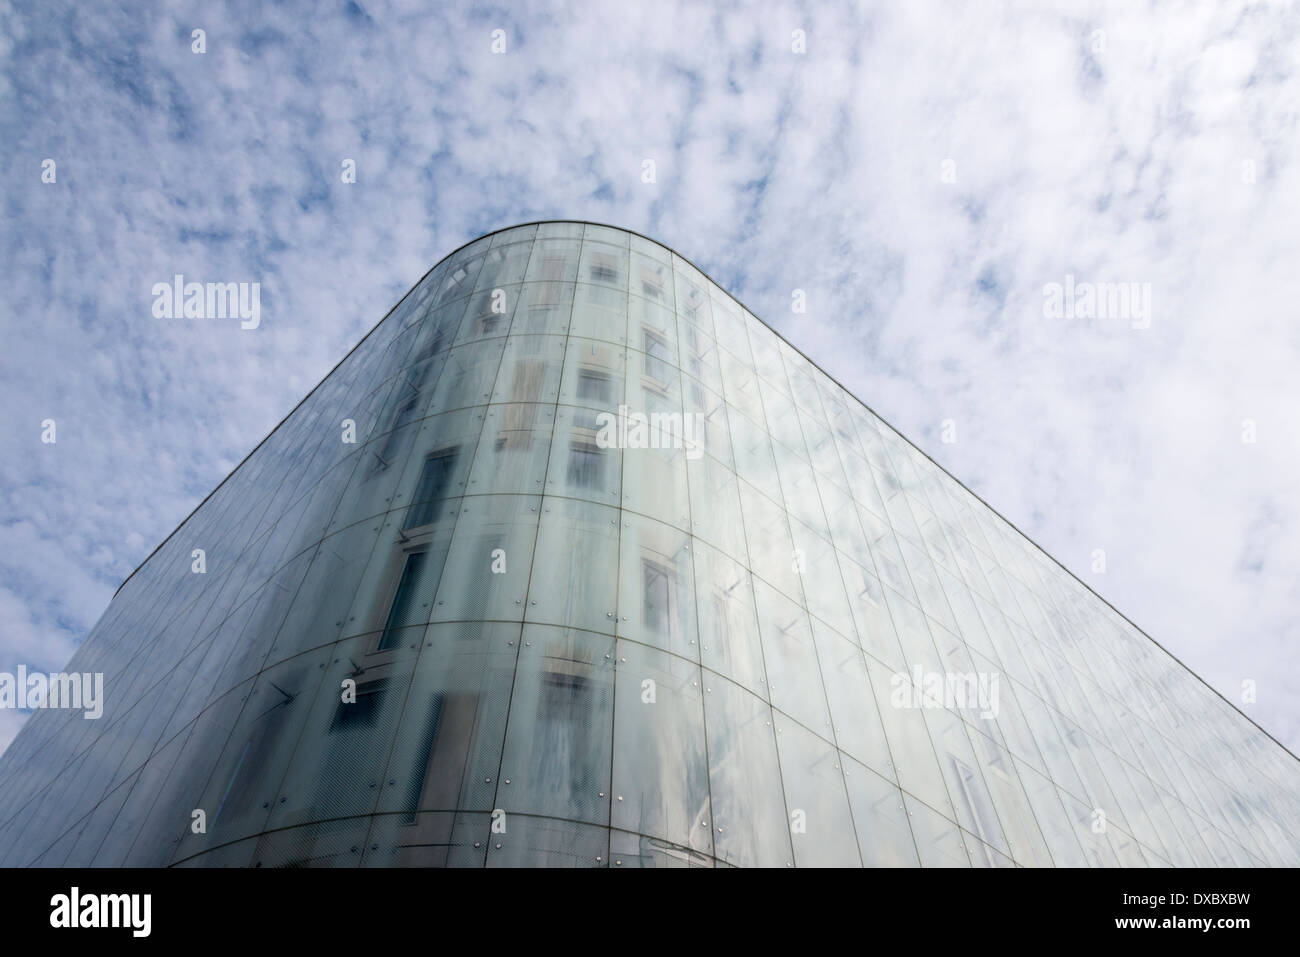 Una vista astratta osservando il tribunale svizzero a Londra REGNO UNITO, un moderno edificio di vetro Foto Stock